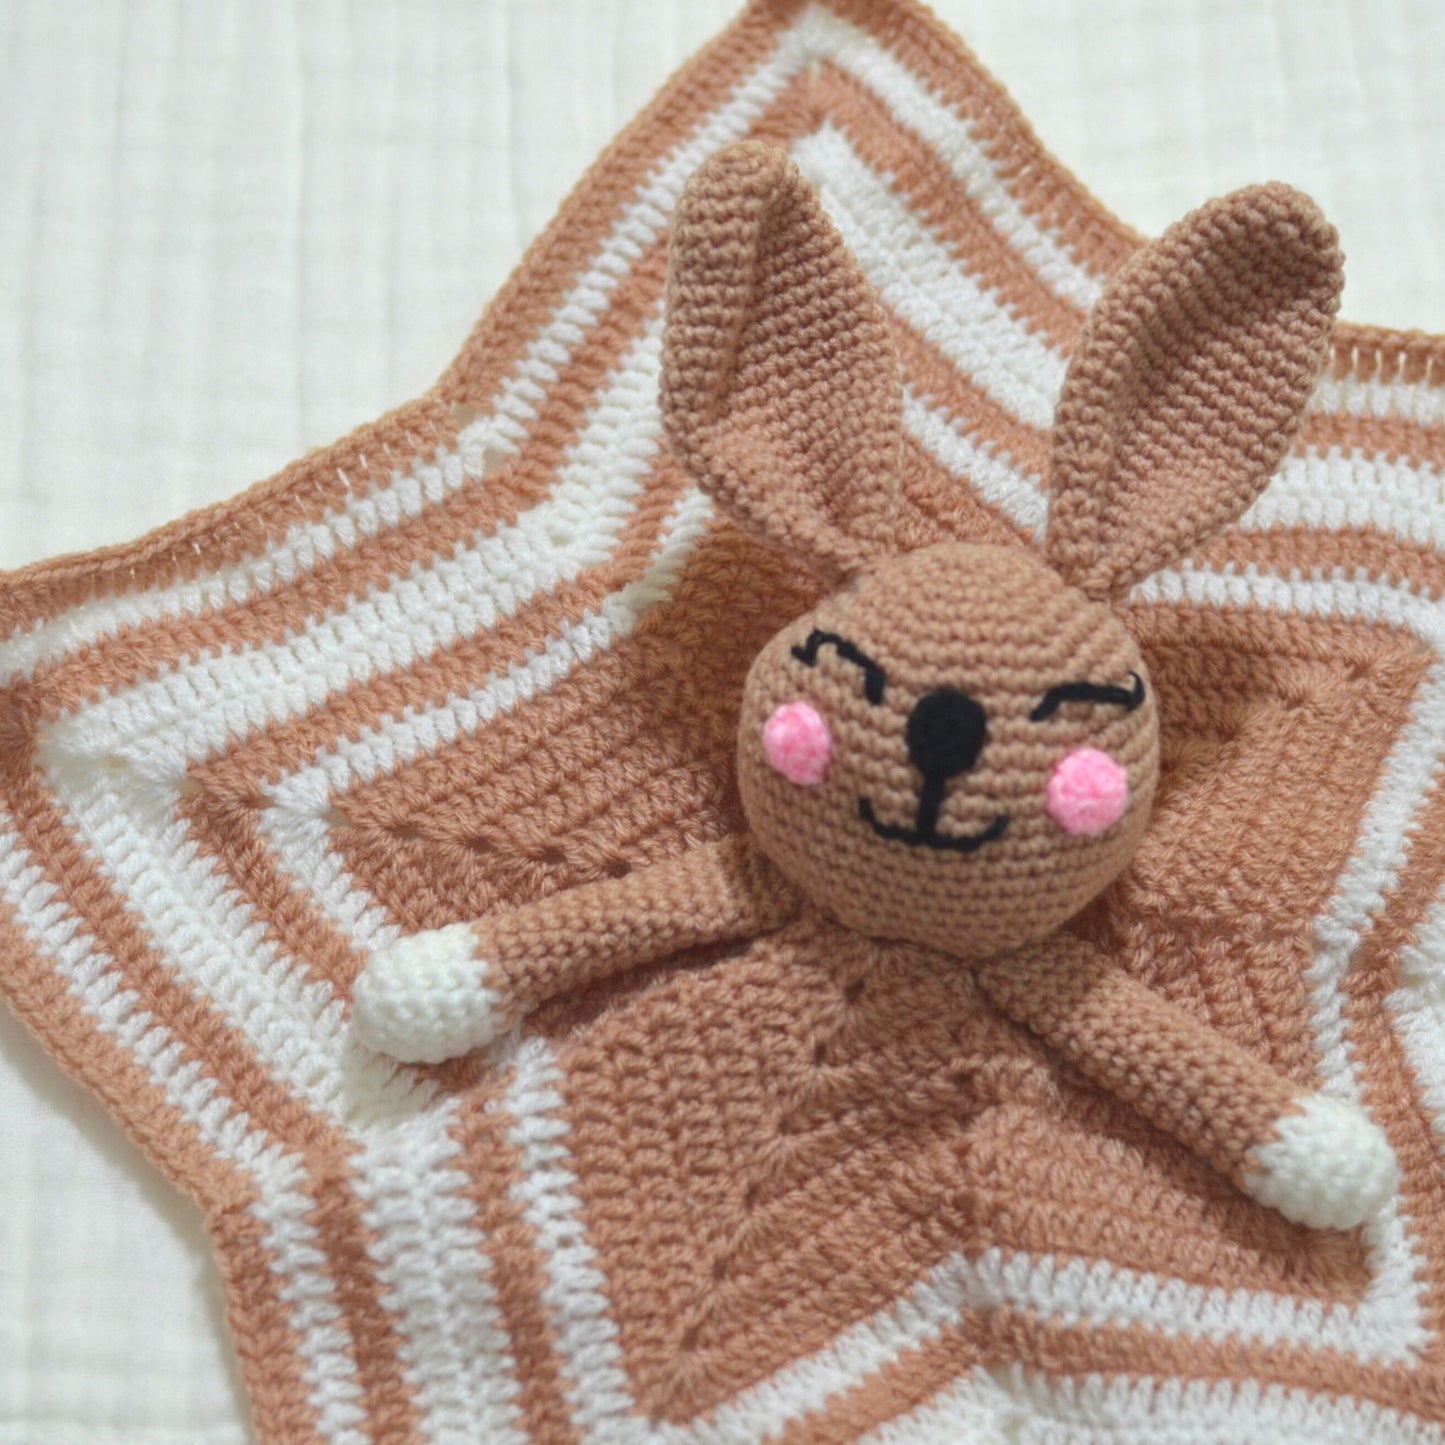 Handmade Crochet Bunny Security Blanket